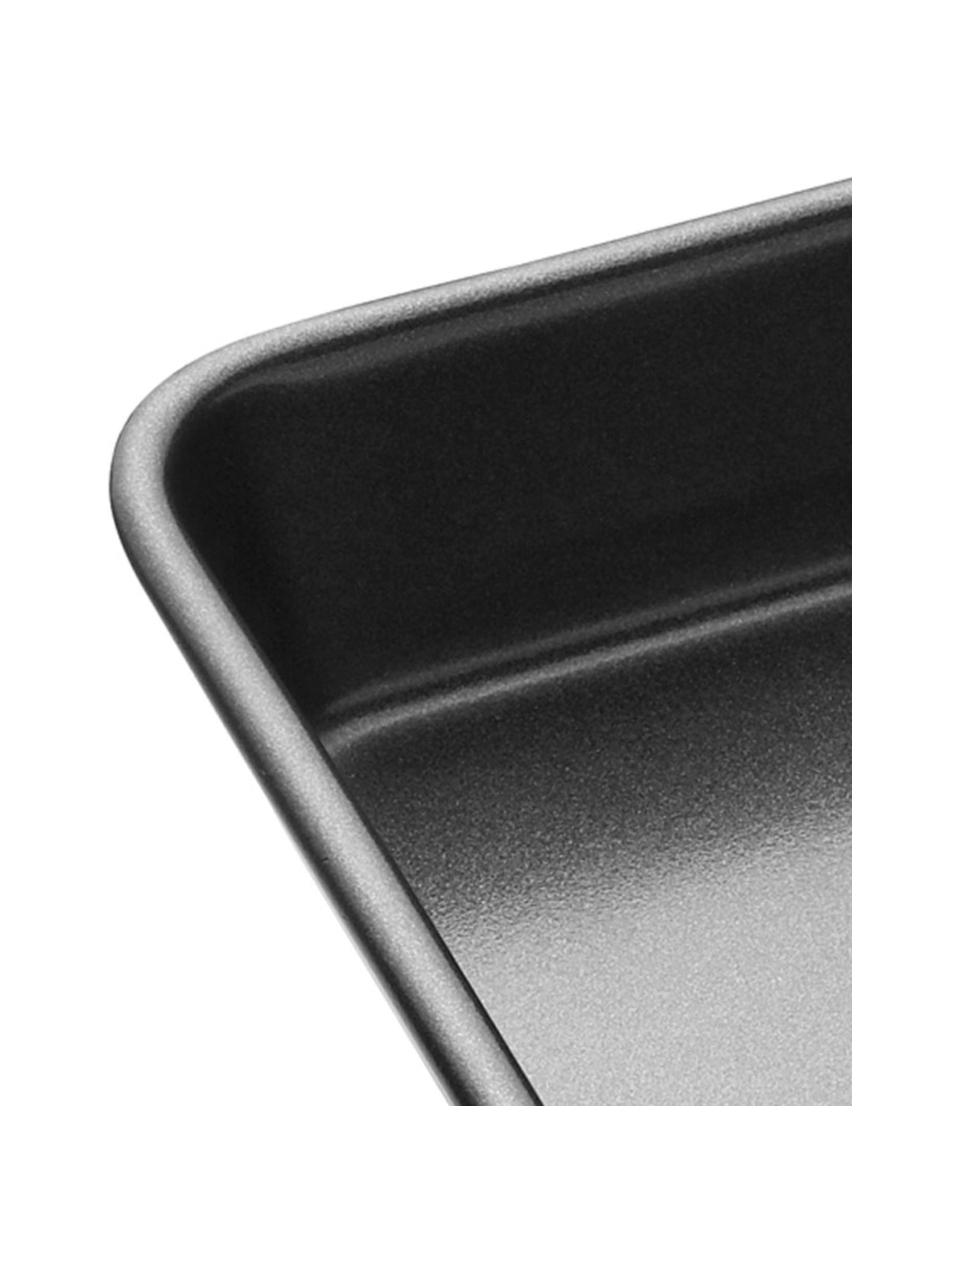 Ofenform MasterClass mit Antihaft-Beschichtung, verschiedene Größen, Stahl mit Antihaft-Beschichtung, Schwarz, B 24 x H 5 cm